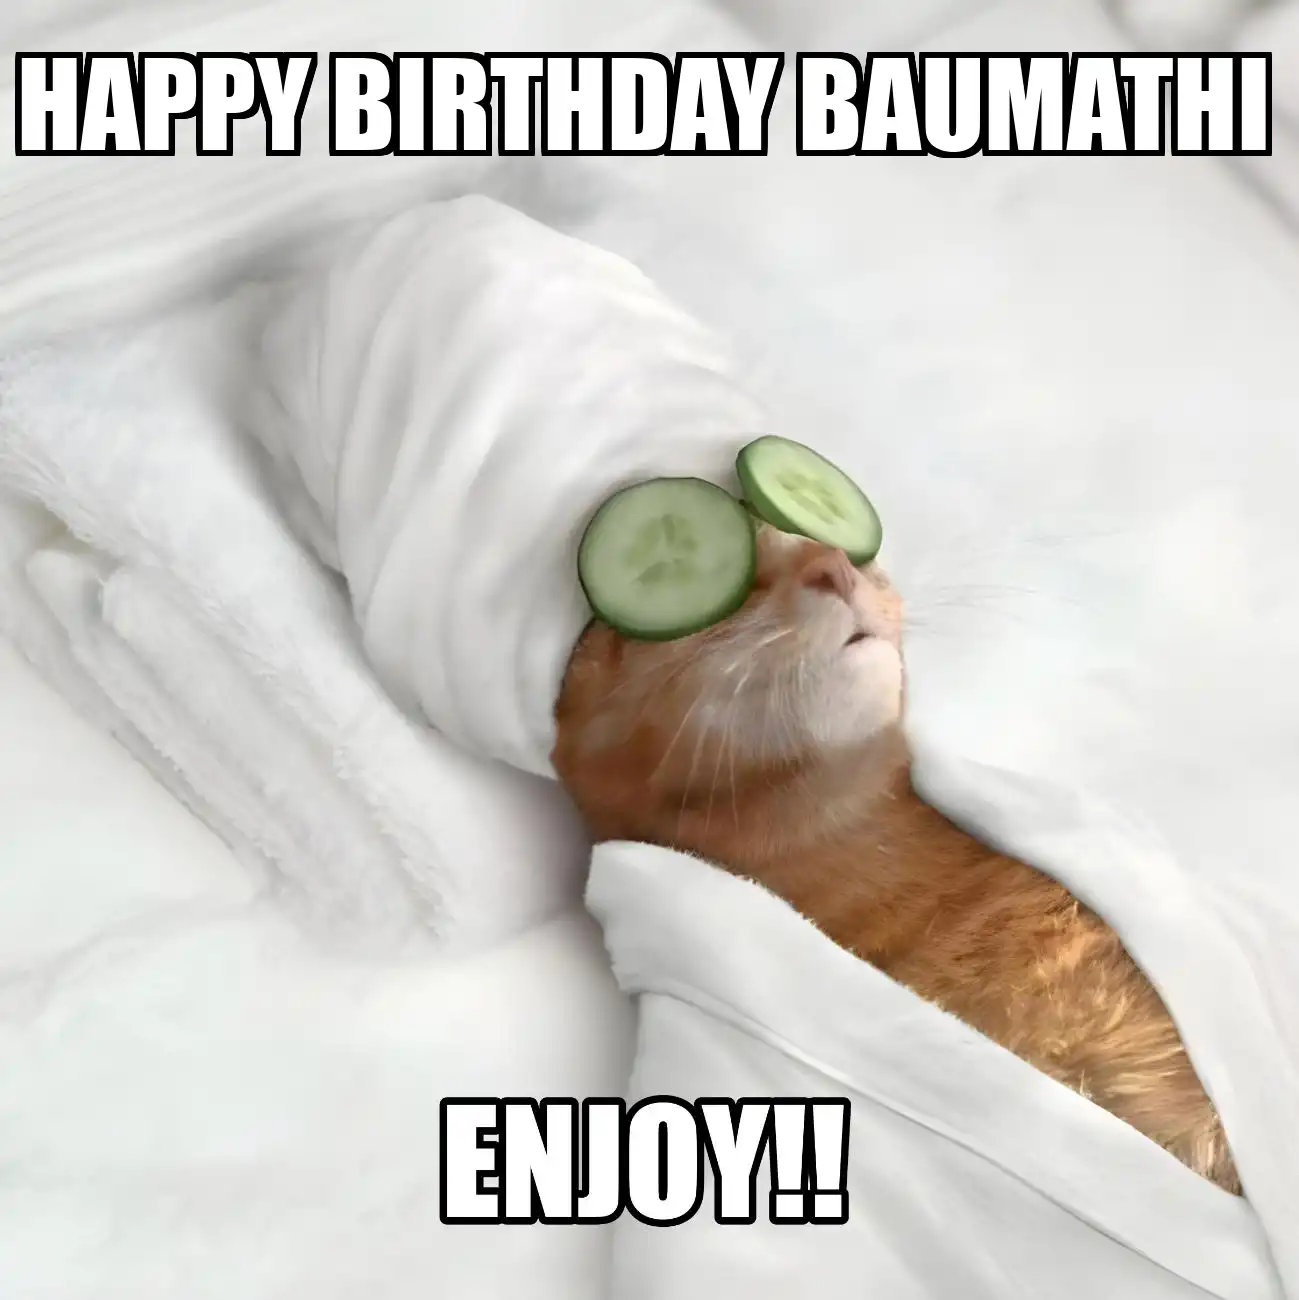 Happy Birthday Baumathi Enjoy Cat Meme